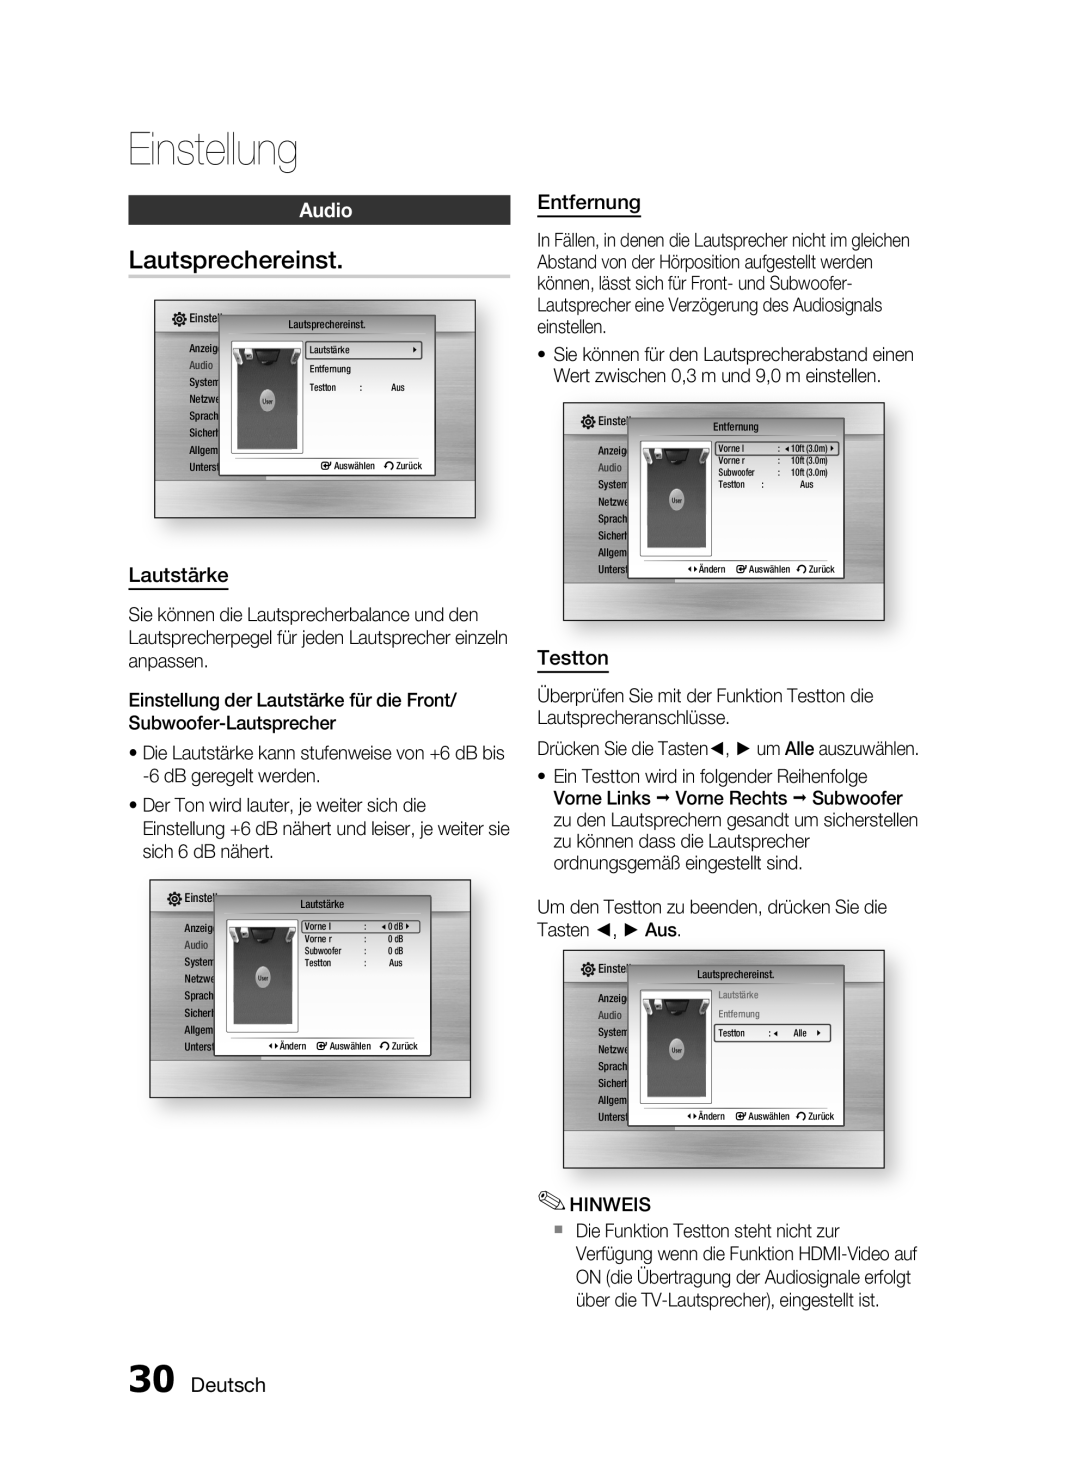 Samsung HT-C6200/XEN, HT-C6200/EDC manual Lautsprechereinst, Audio, Lautstärke, Entfernung, Testton, Deutsch, Einstellung 